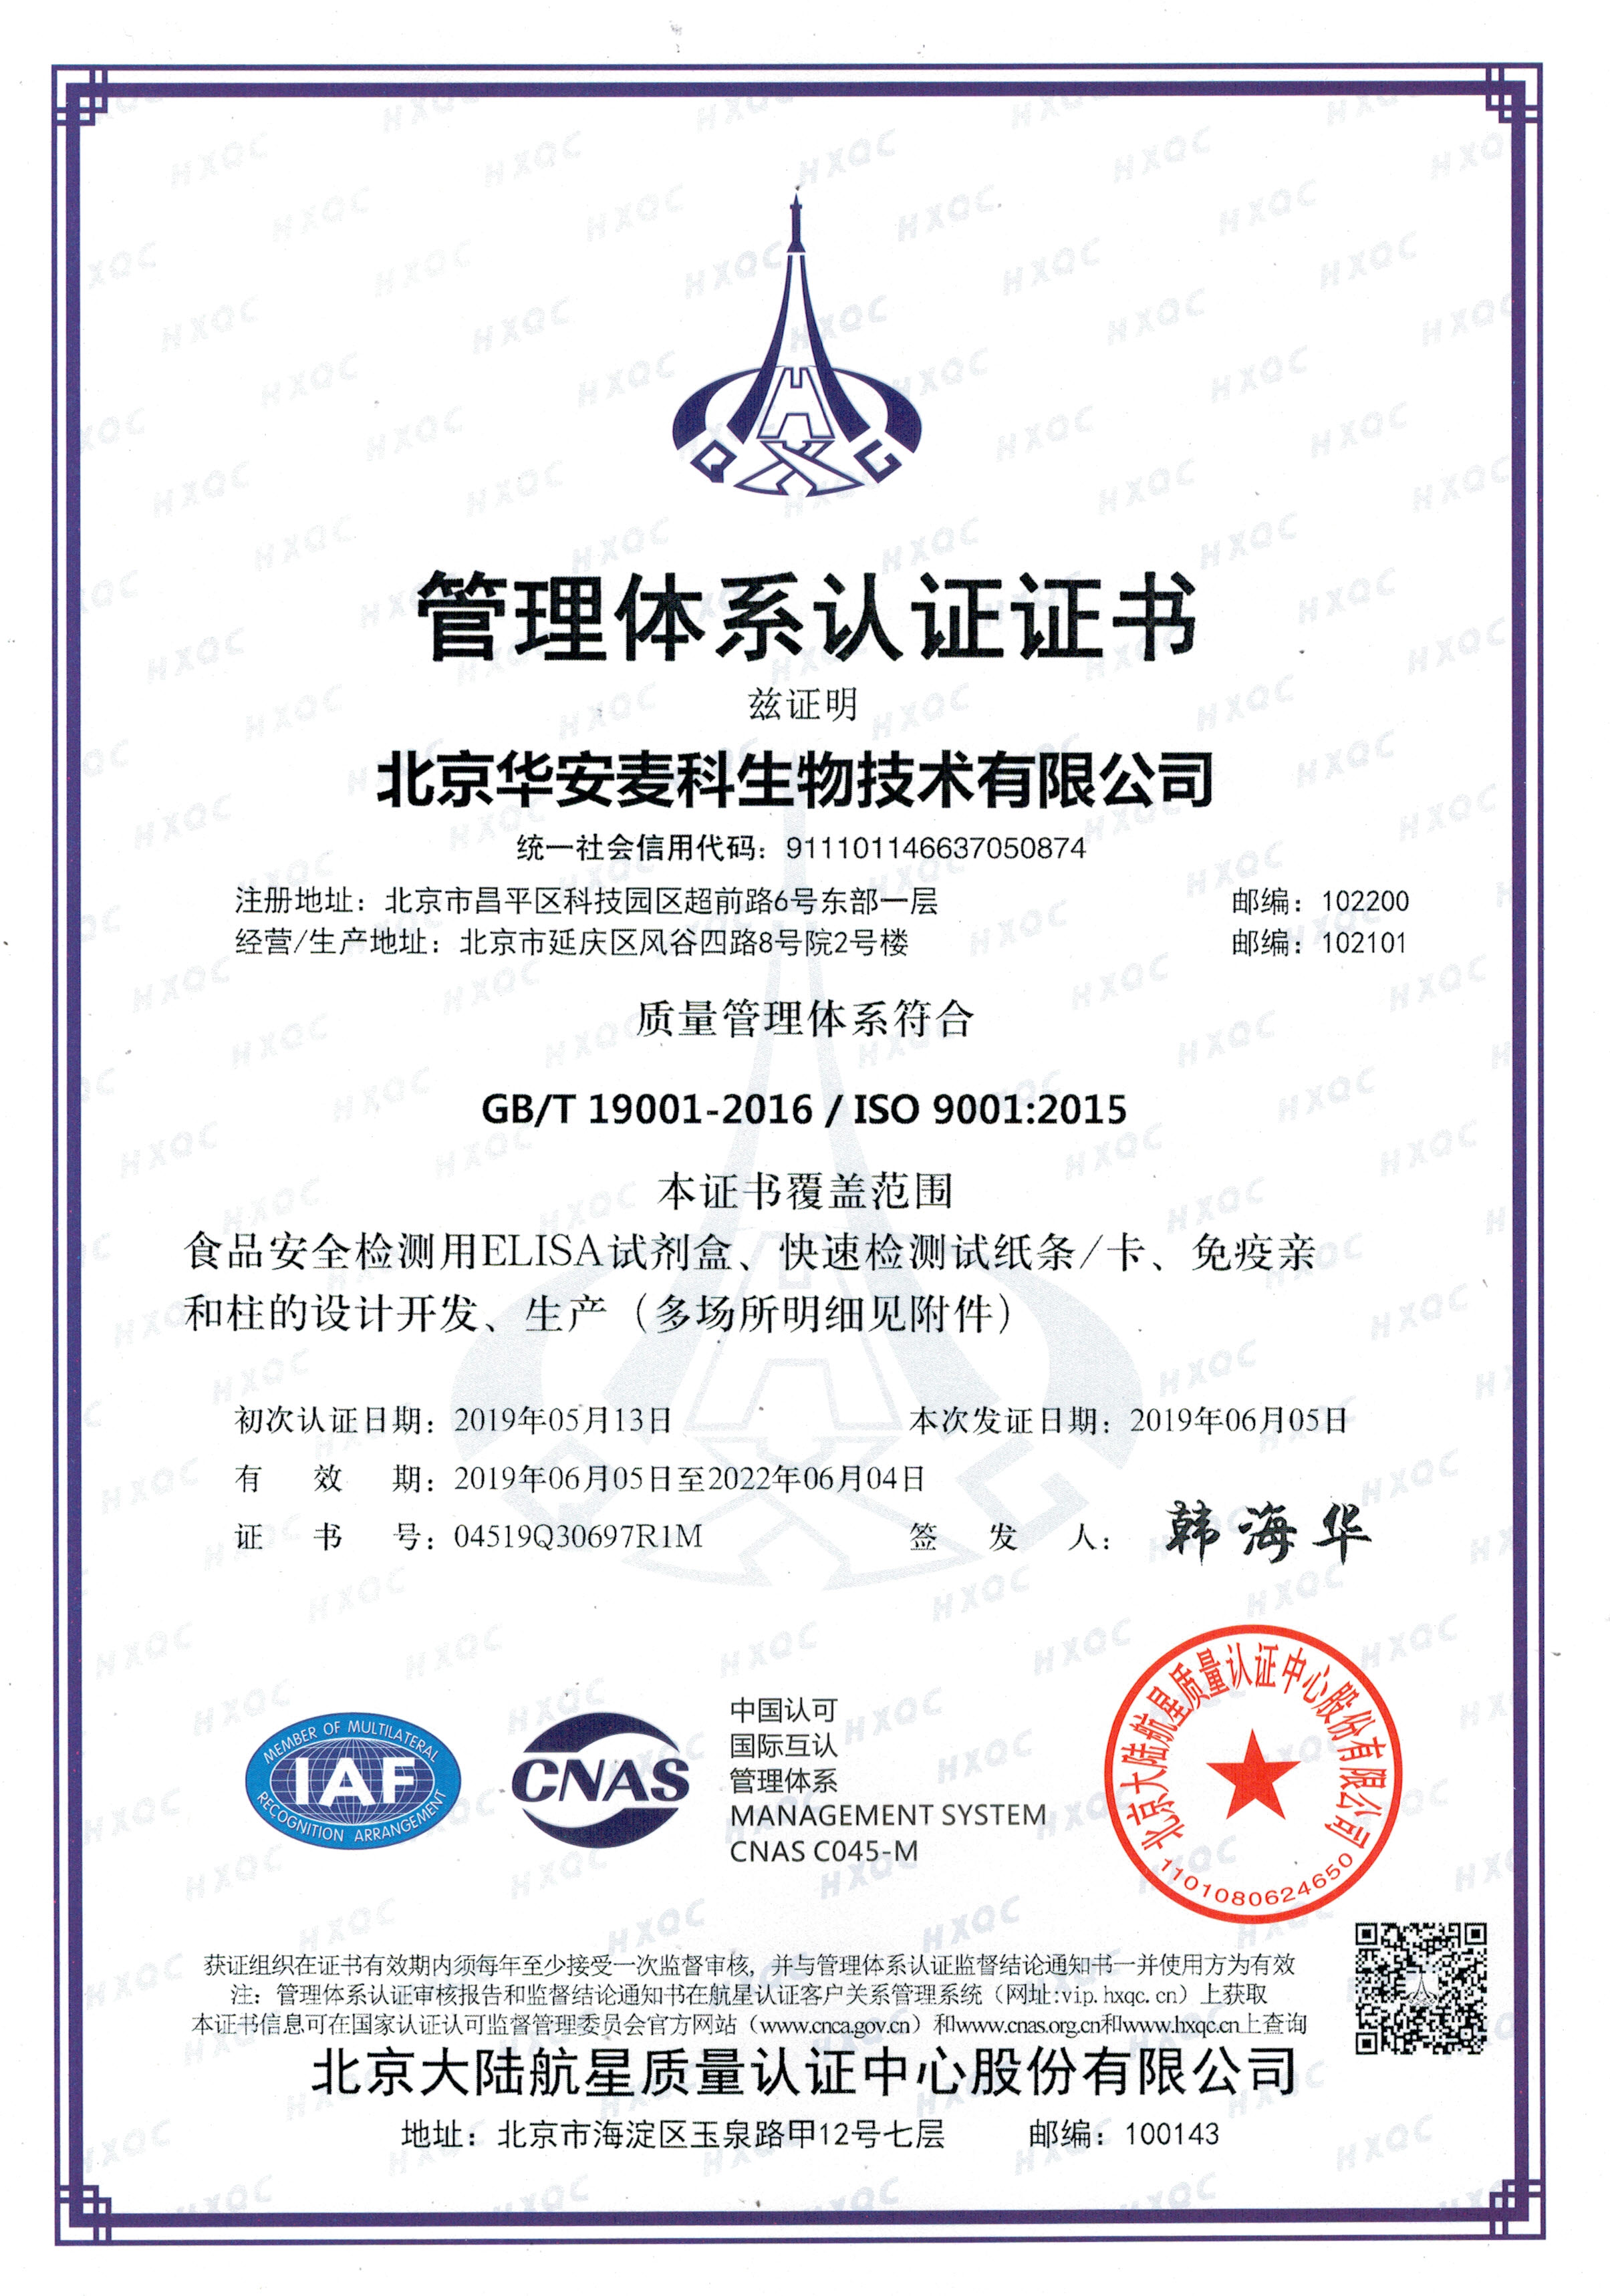 华安麦科-管理体系认证证书